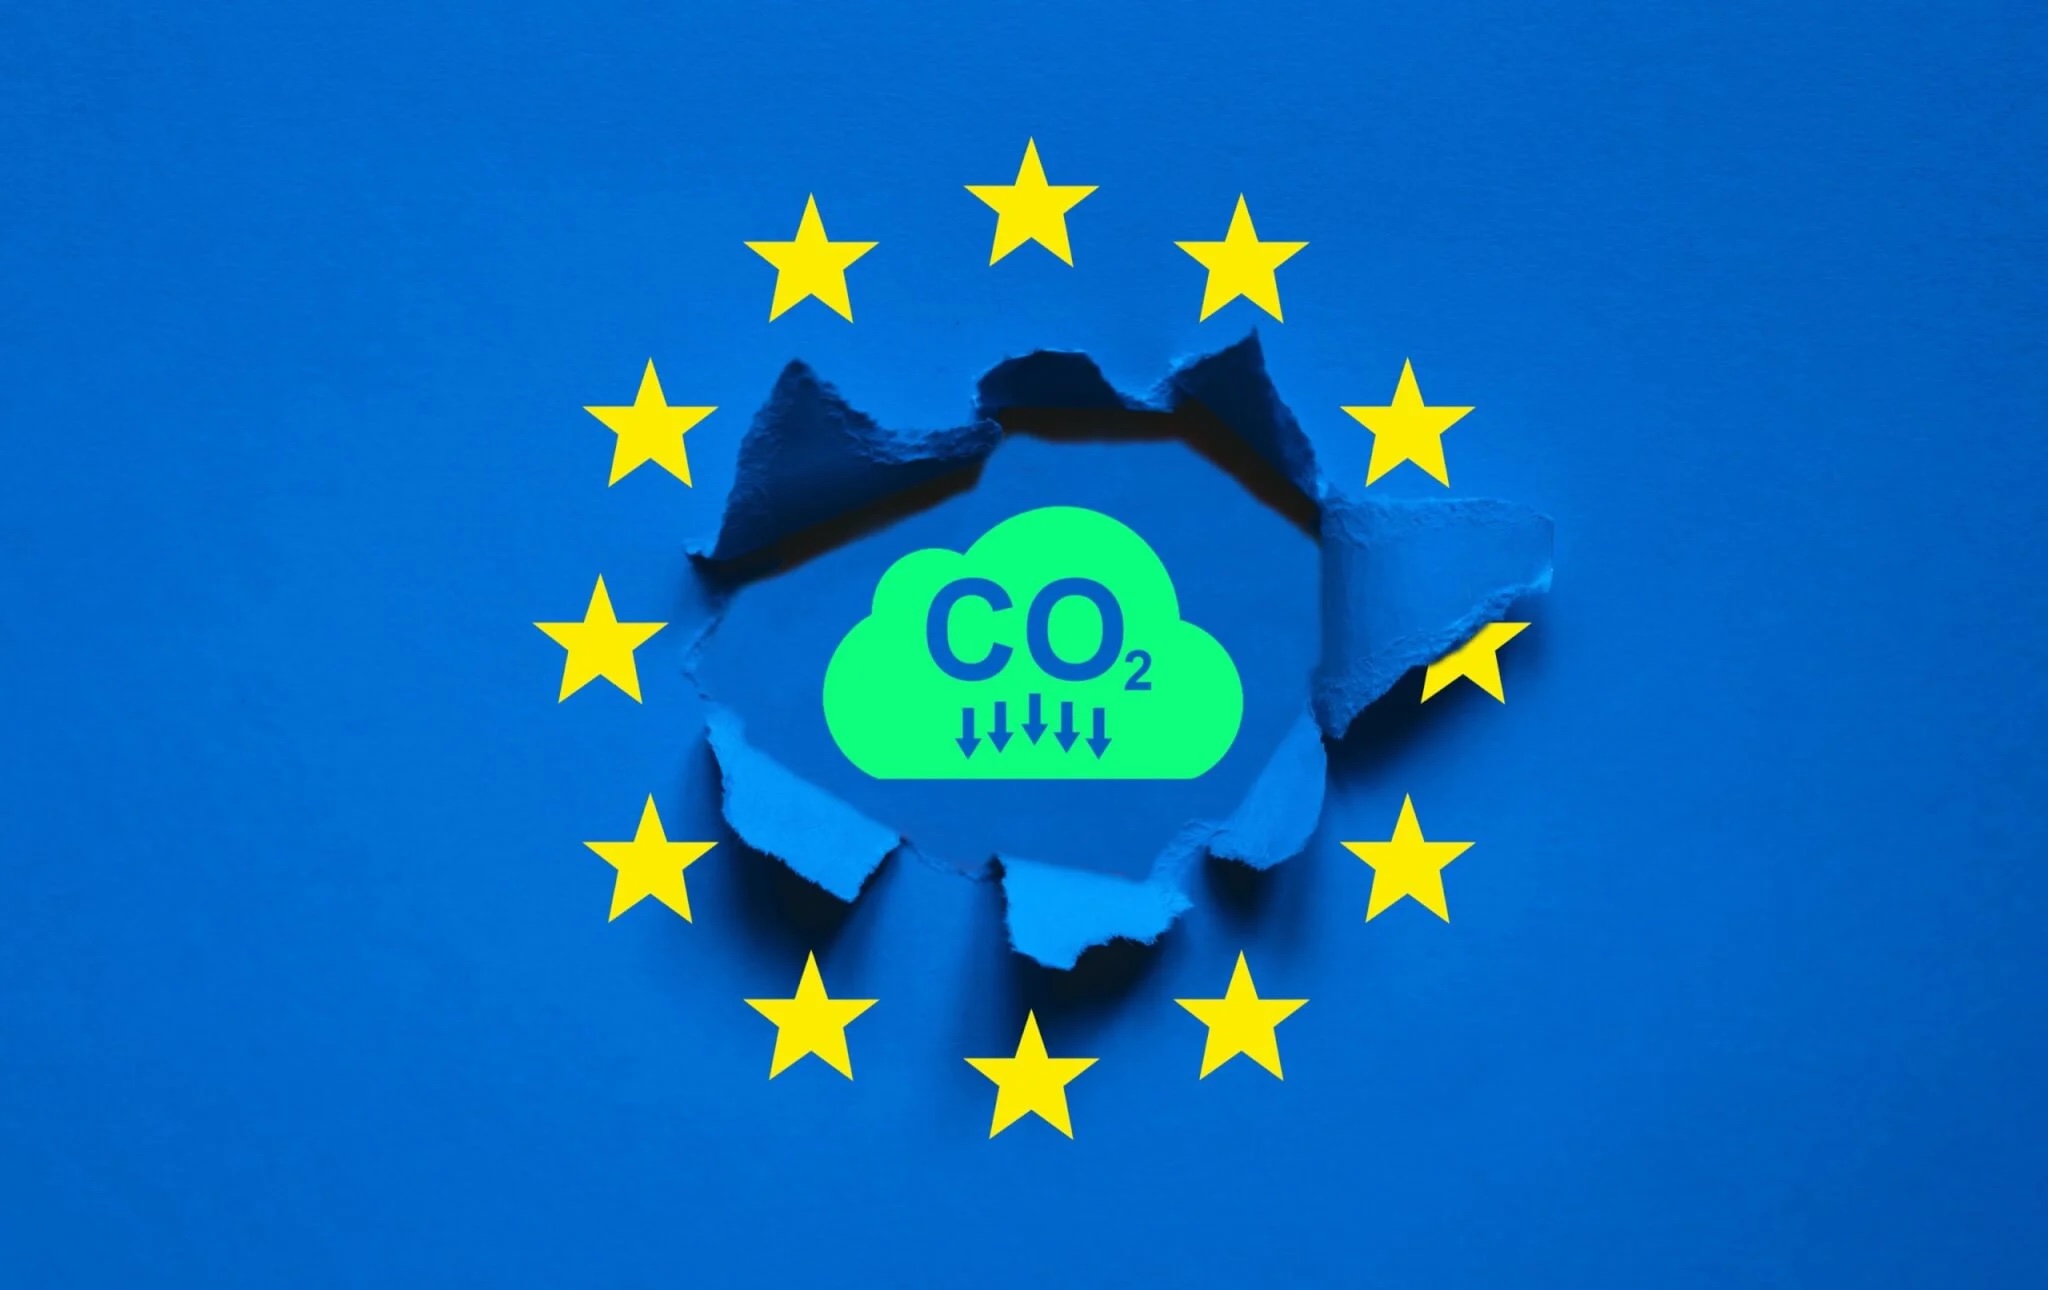 EU “siết” quy định với ô tô chạy bằng nhiên liệu điện tử và môi trường